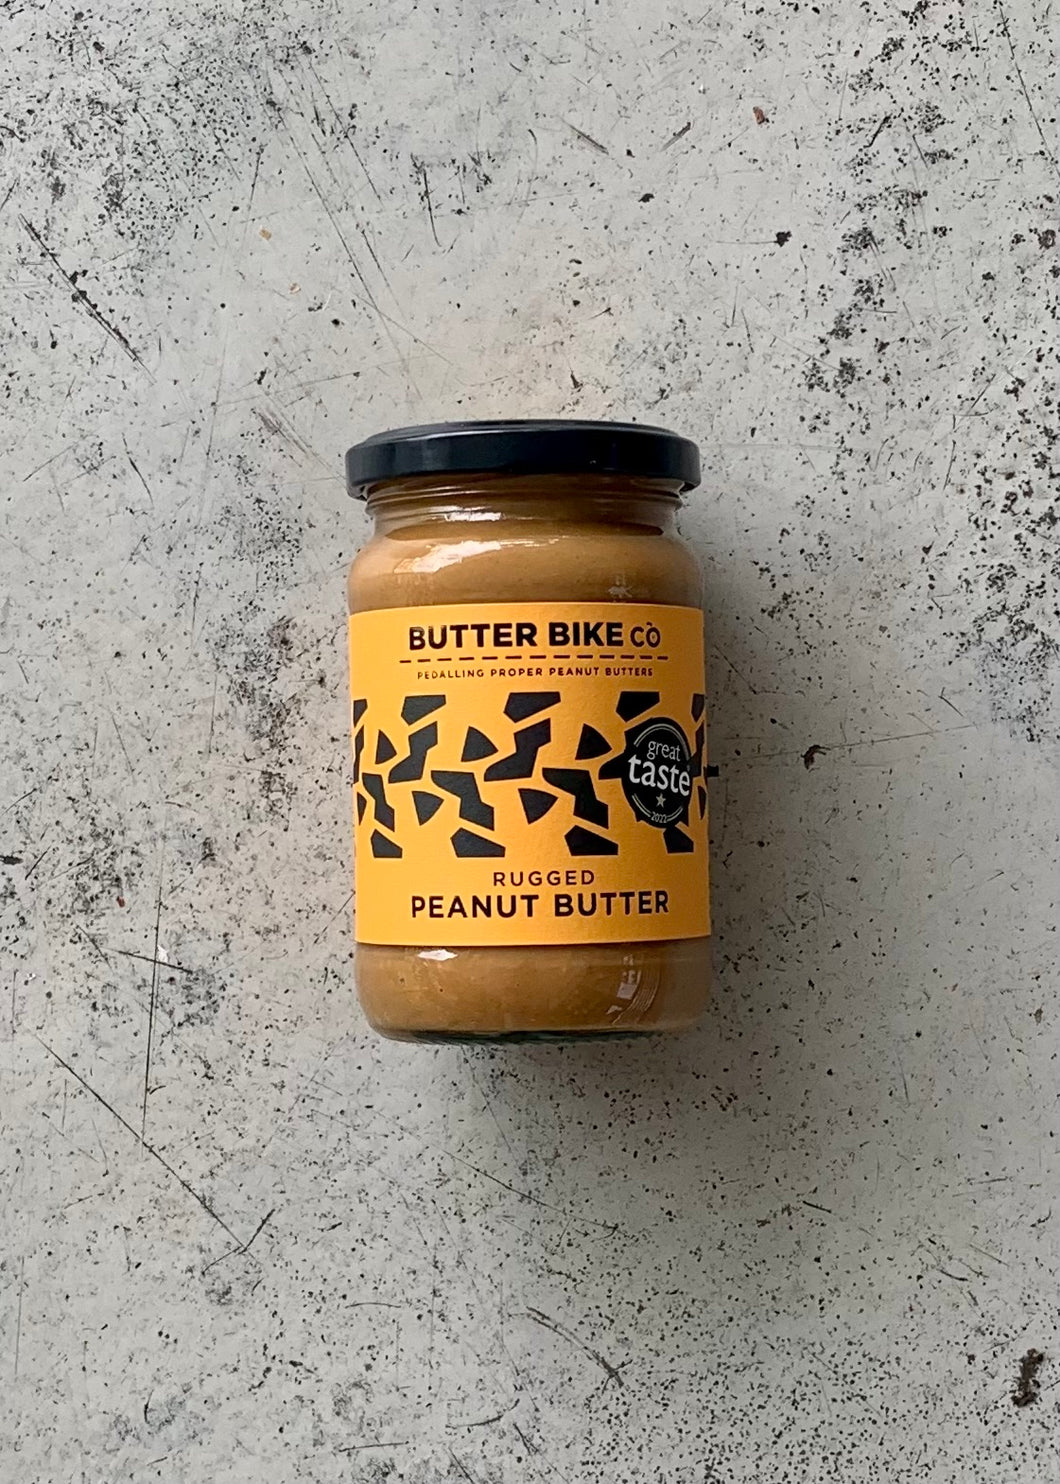 Butter Bike Co. Rugged Peanut Butter (285g)